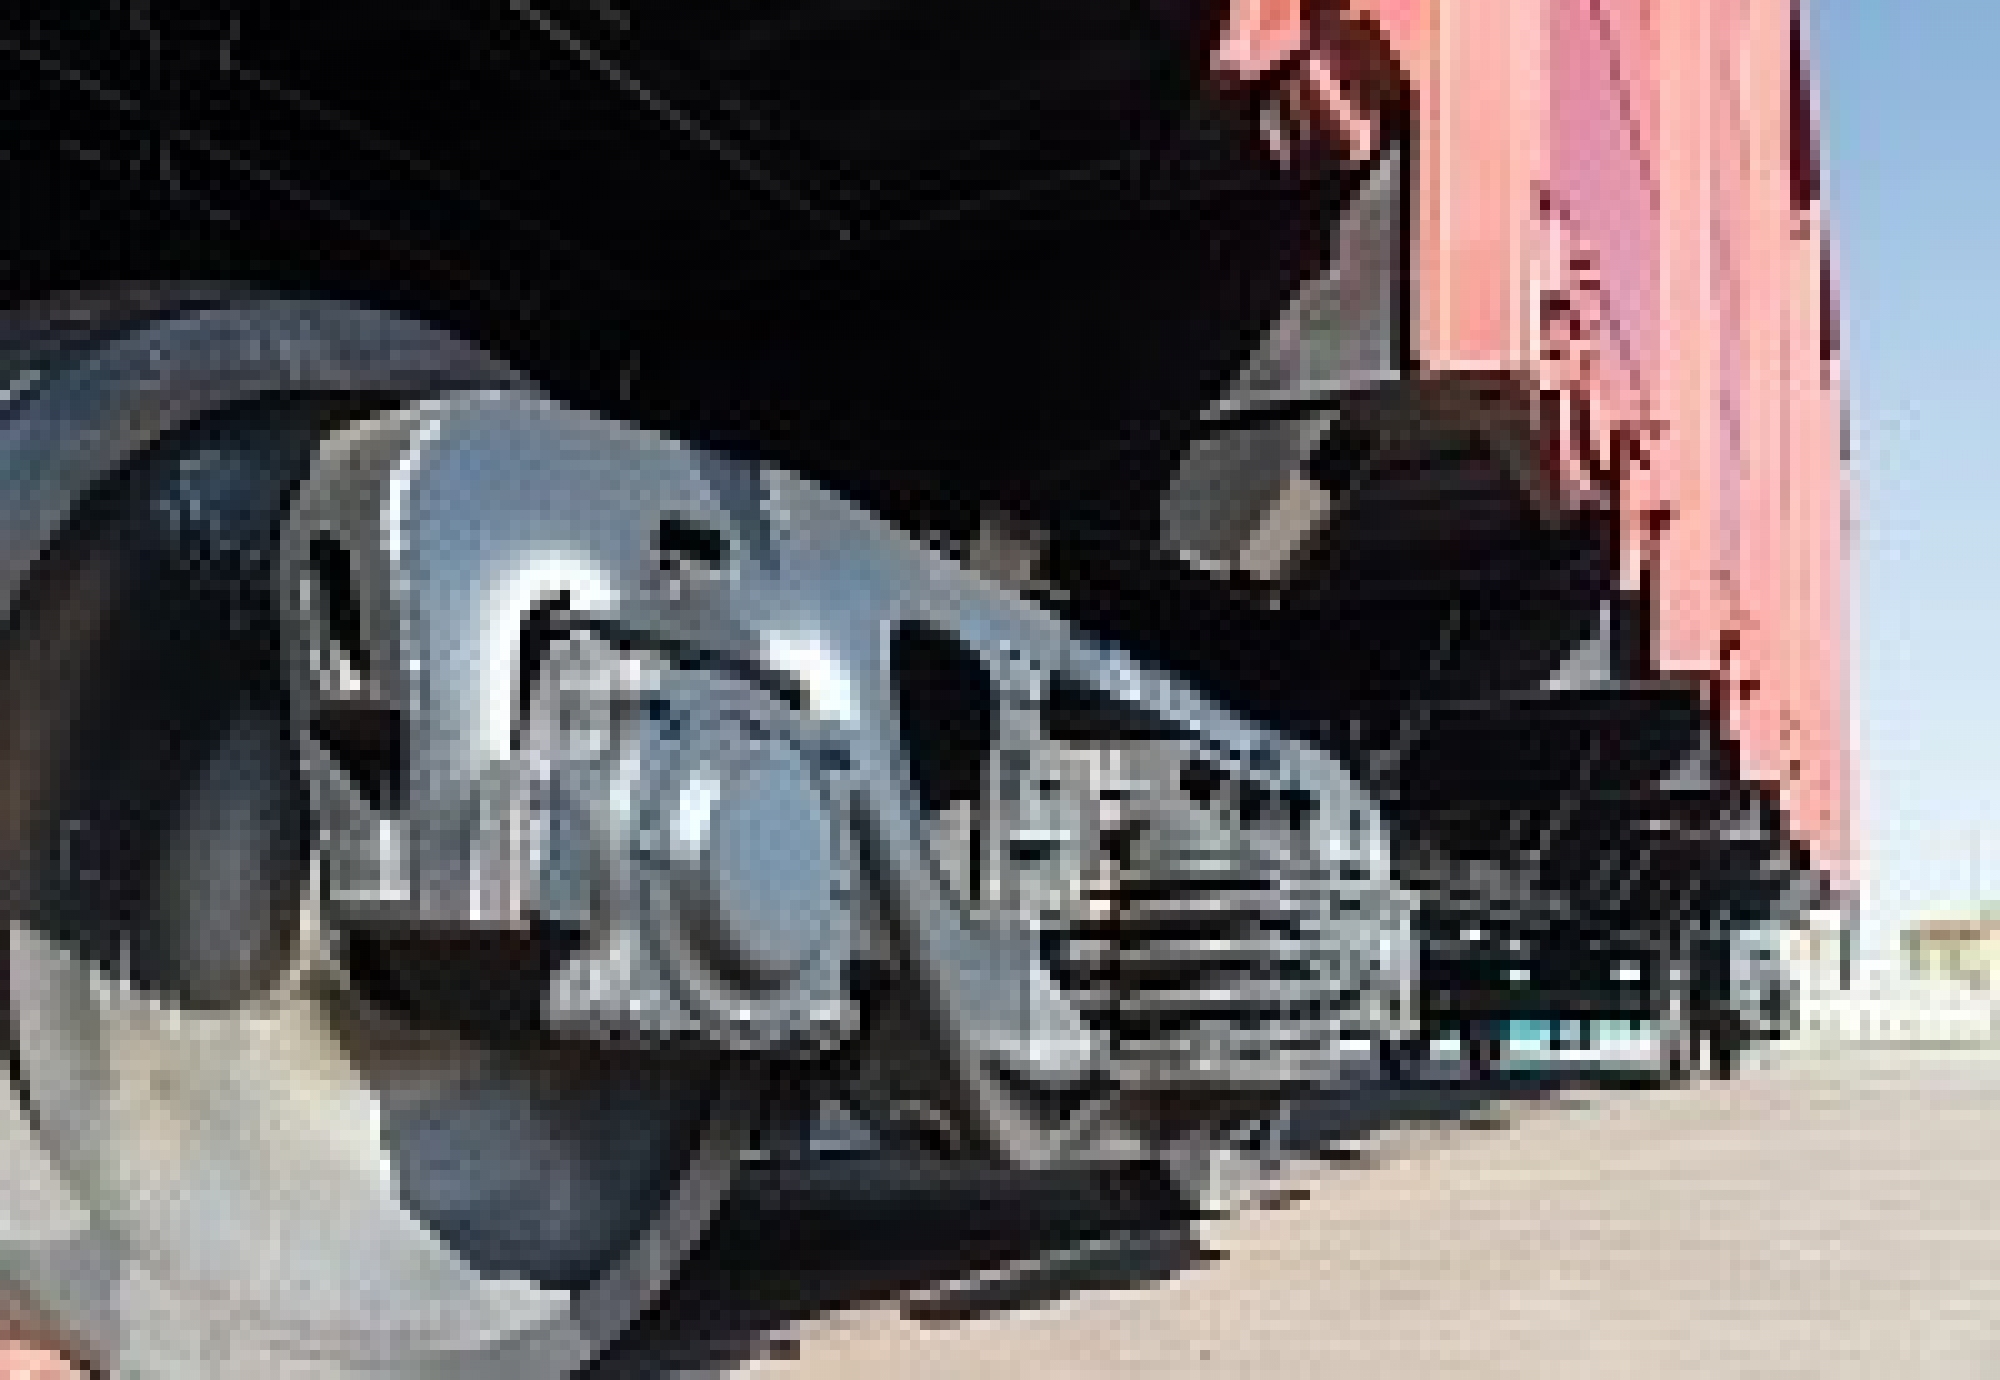 ПГК запустит вагоноремонтную компанию в Алтайском крае в 2022 году